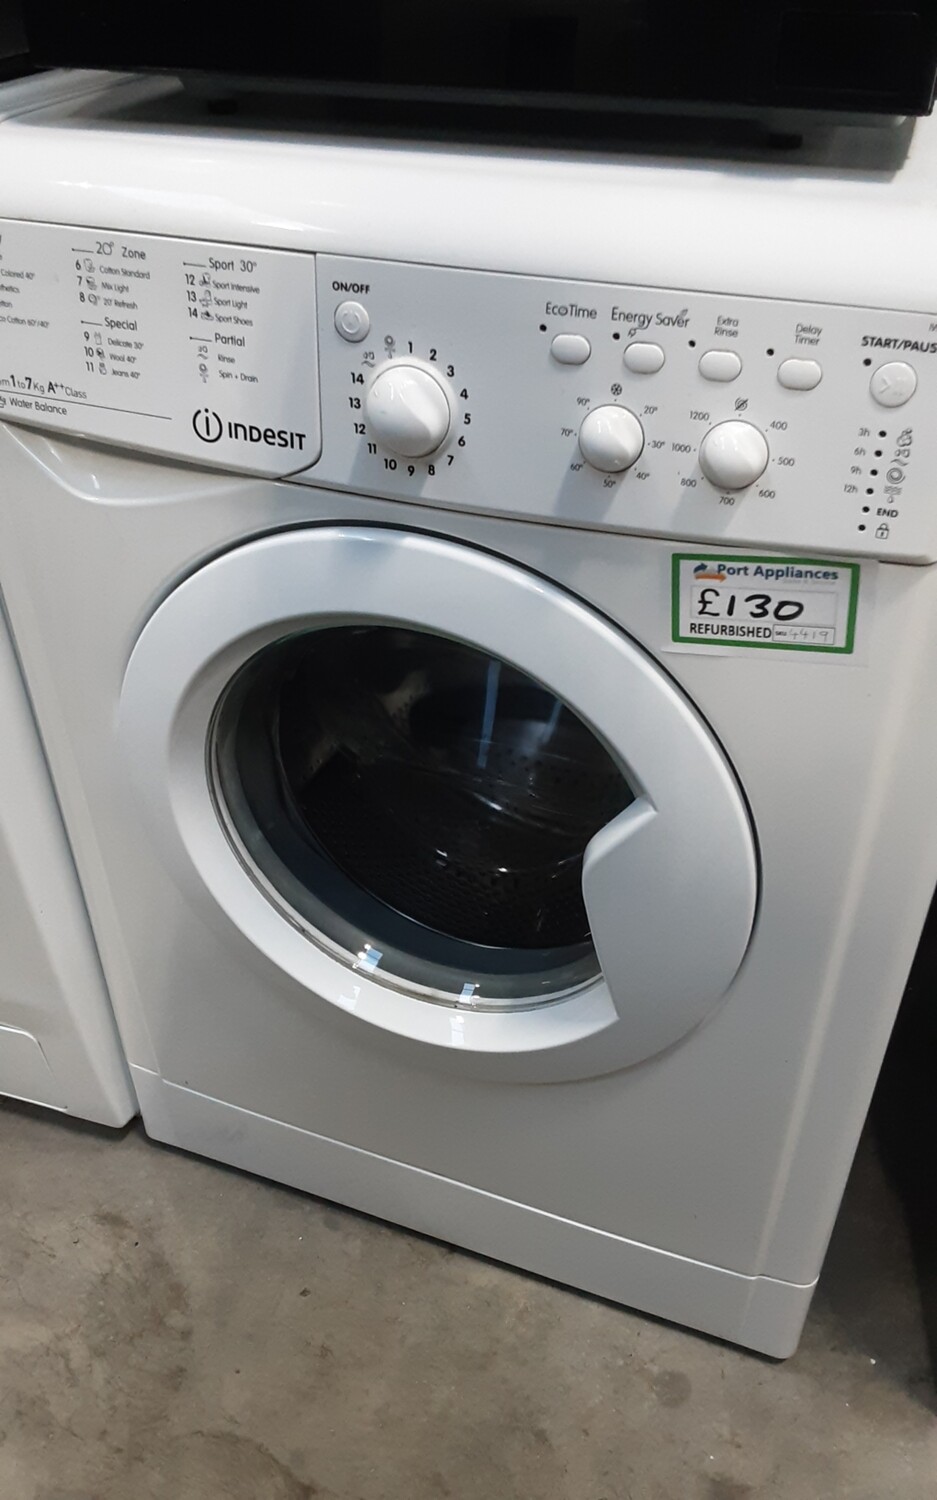 Indesit IWC71252 7kg Load 1200 Spin Washing Machine - White - Refurbished - 6 Month Guarantee